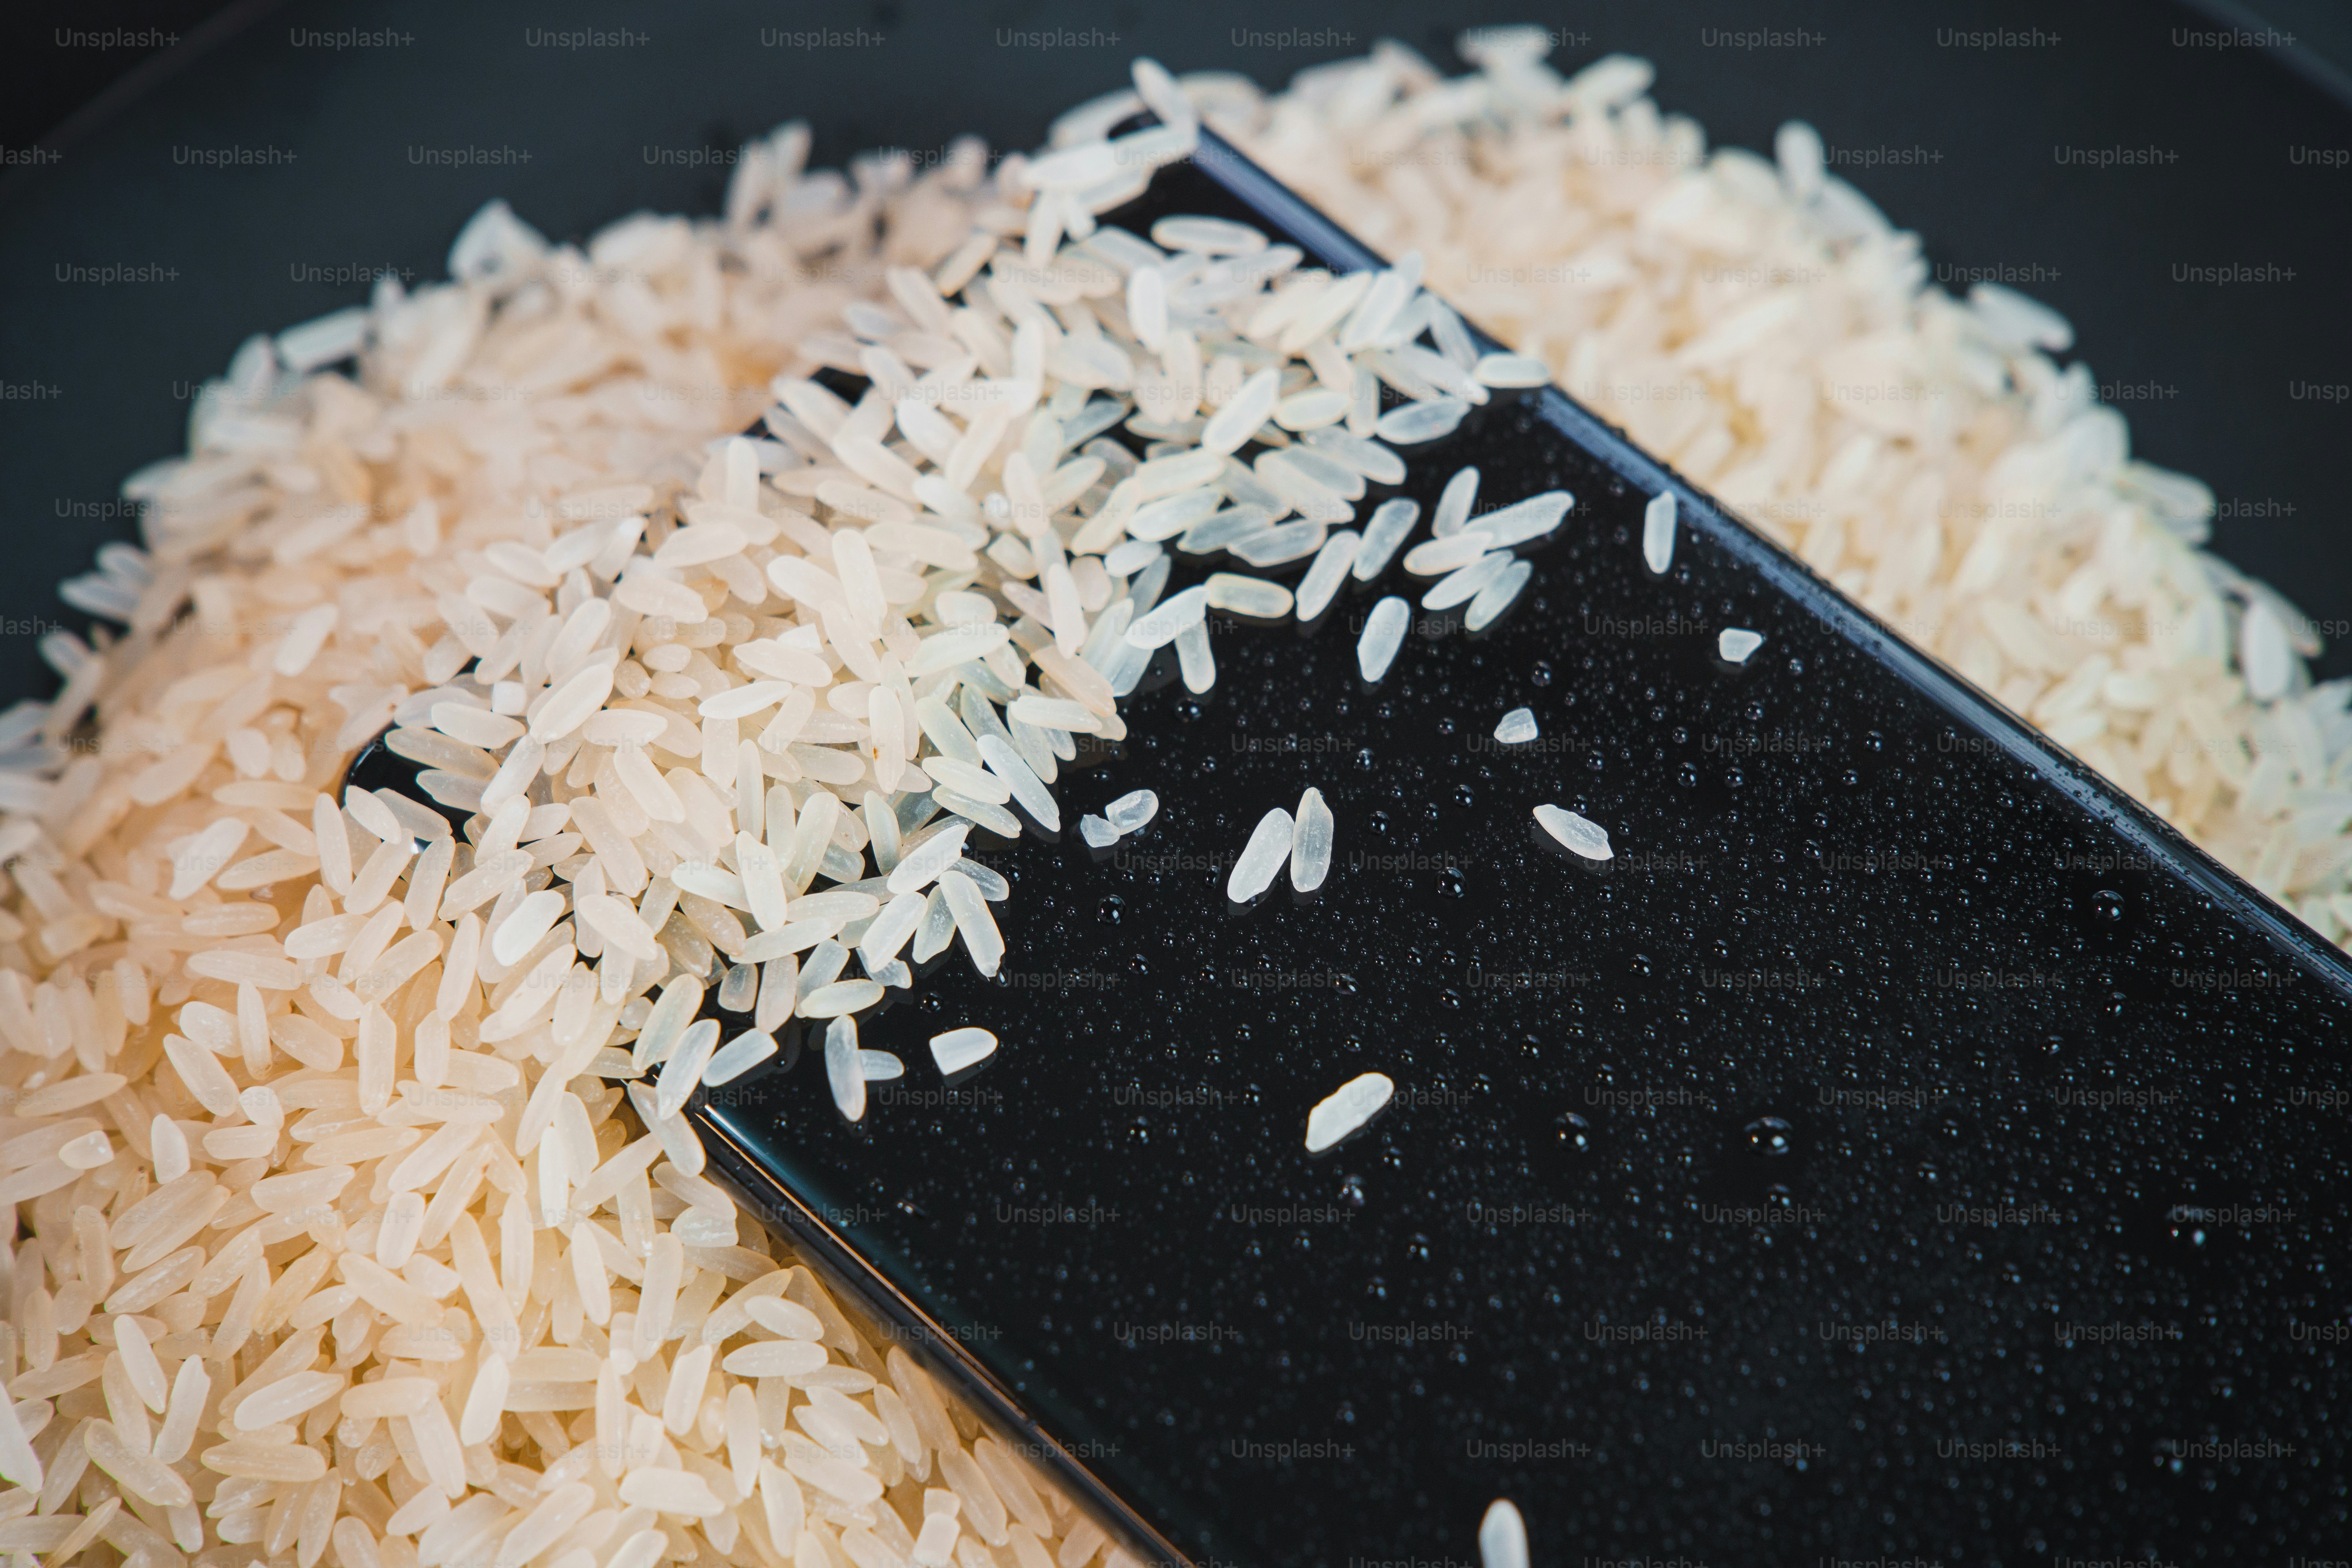 Wet Smartphone repair using rice.